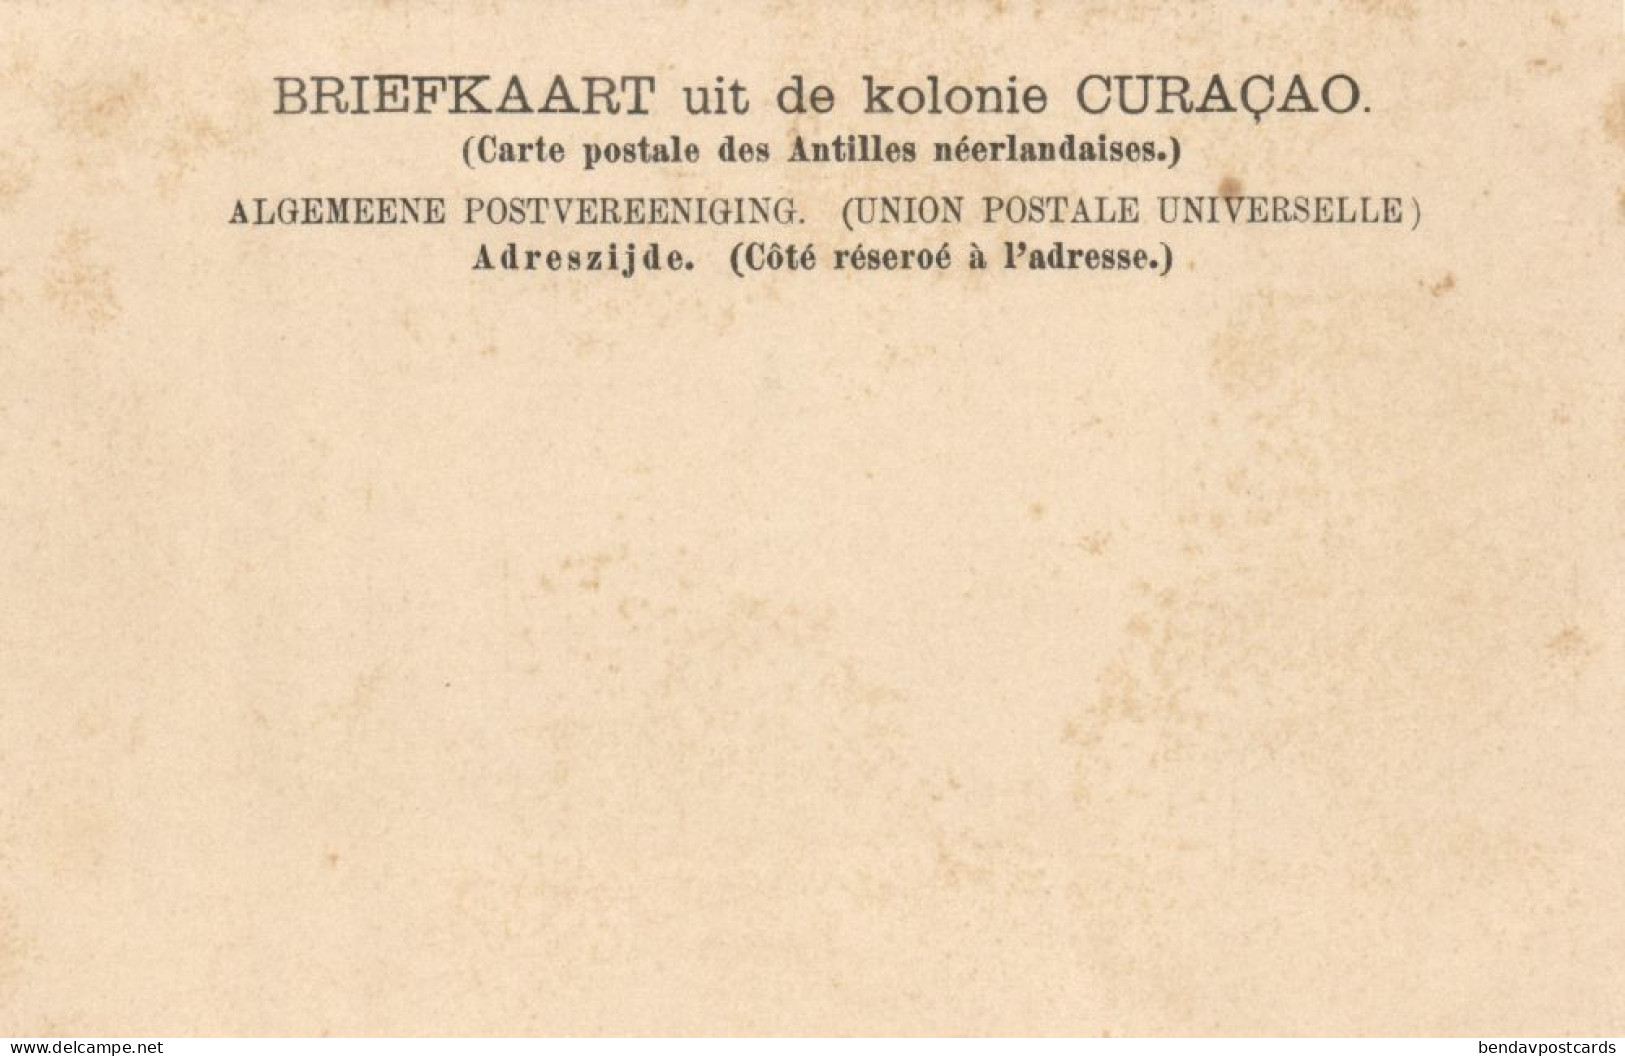 Curacao, W.I., WILLEMSTAD, Breedestraat (1900s) Gebr. Jonckheer Postcard - Curaçao